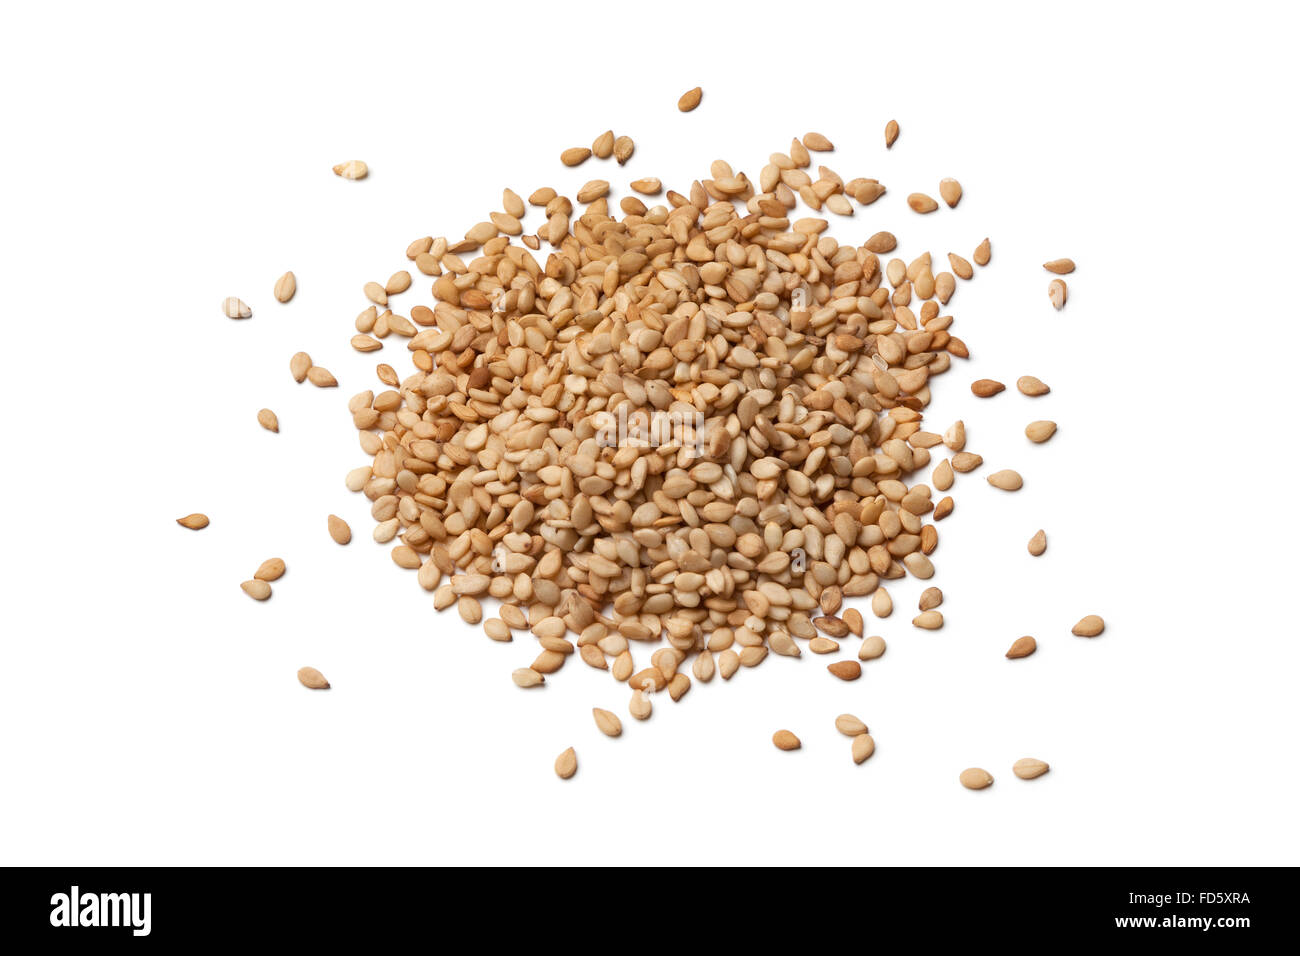 Roasted sesame seeds on white background Stock Photo